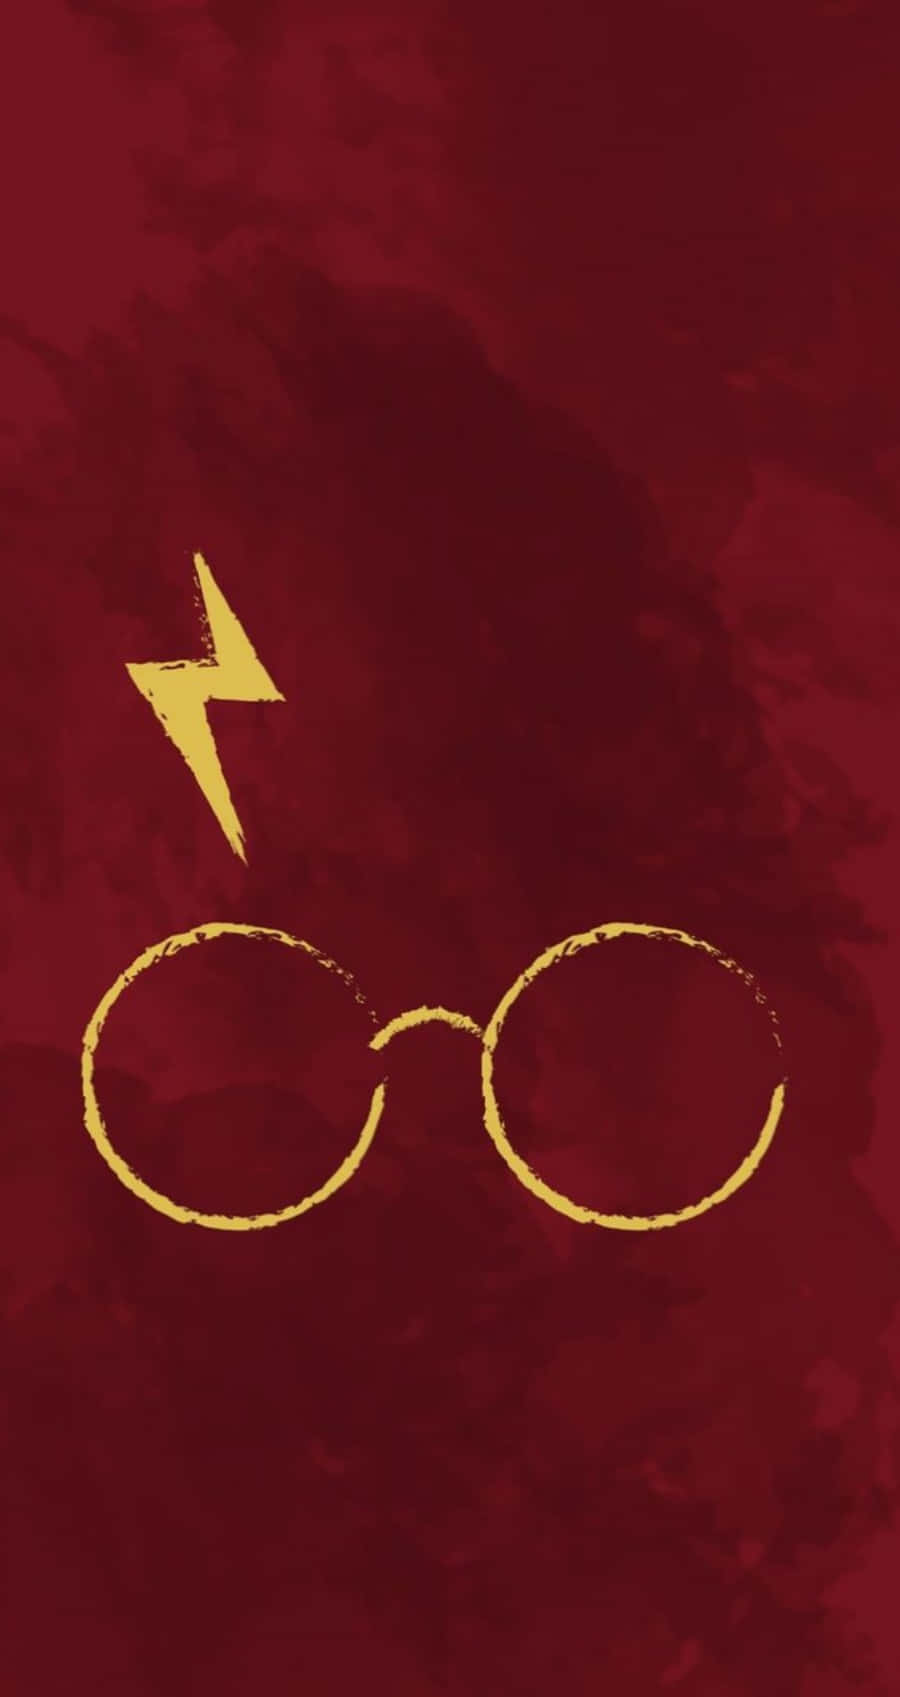 Imágenesestéticas De Harry Potter.